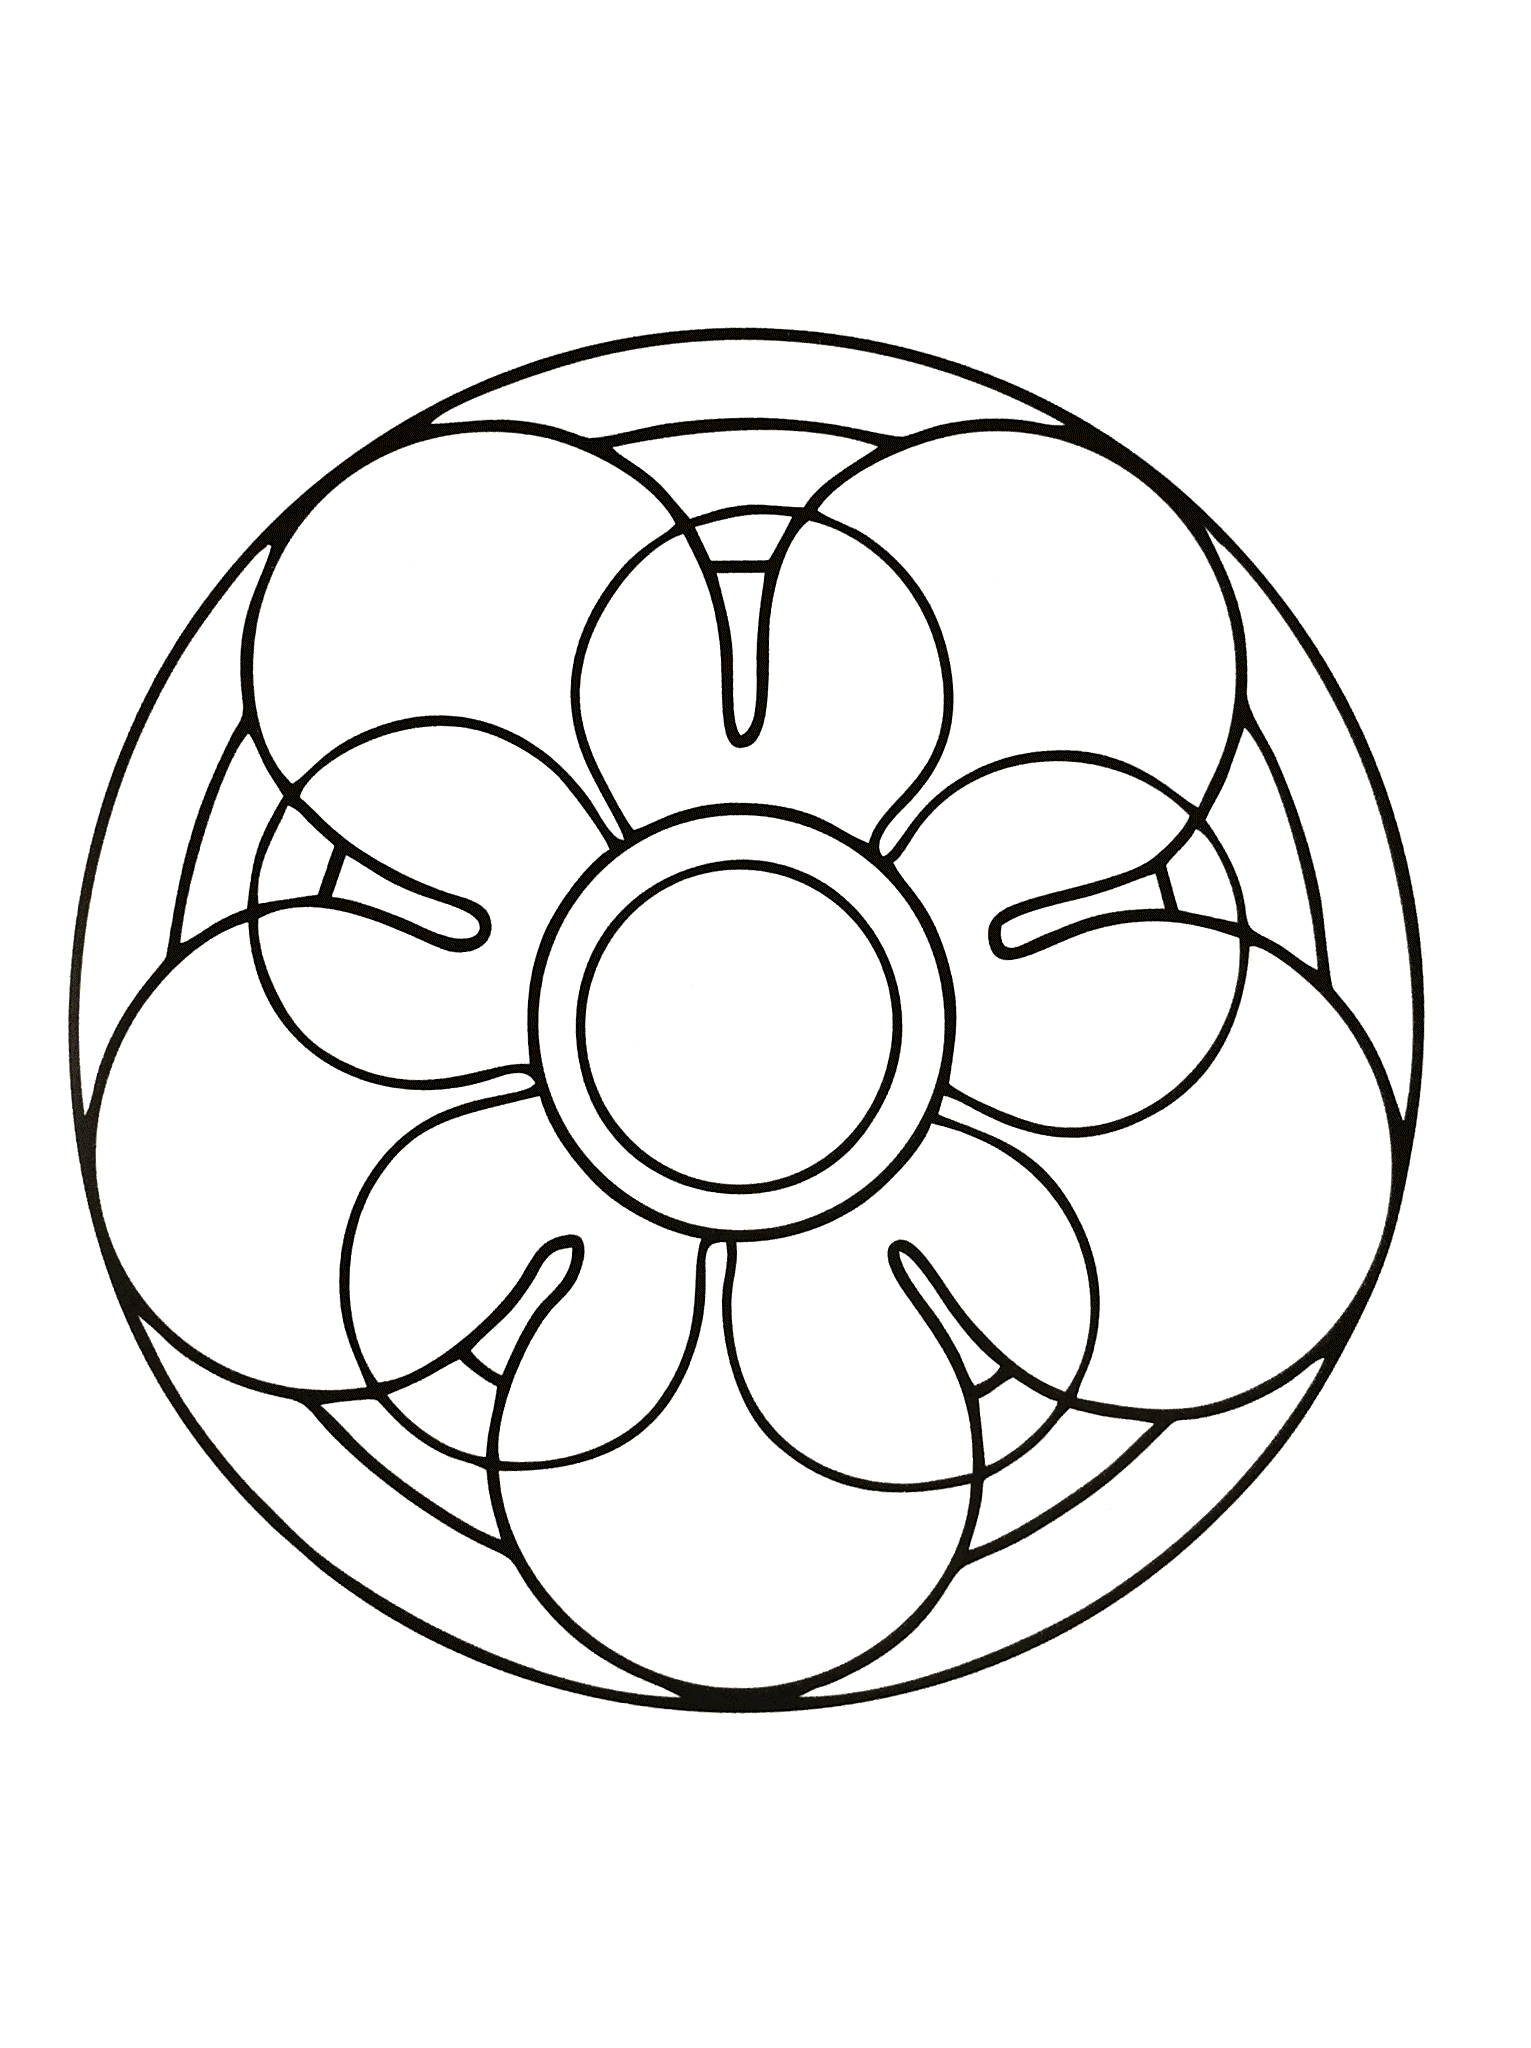 Mandala da colorare con un fiore e un cerchio al centro. Molto facile da colorare.